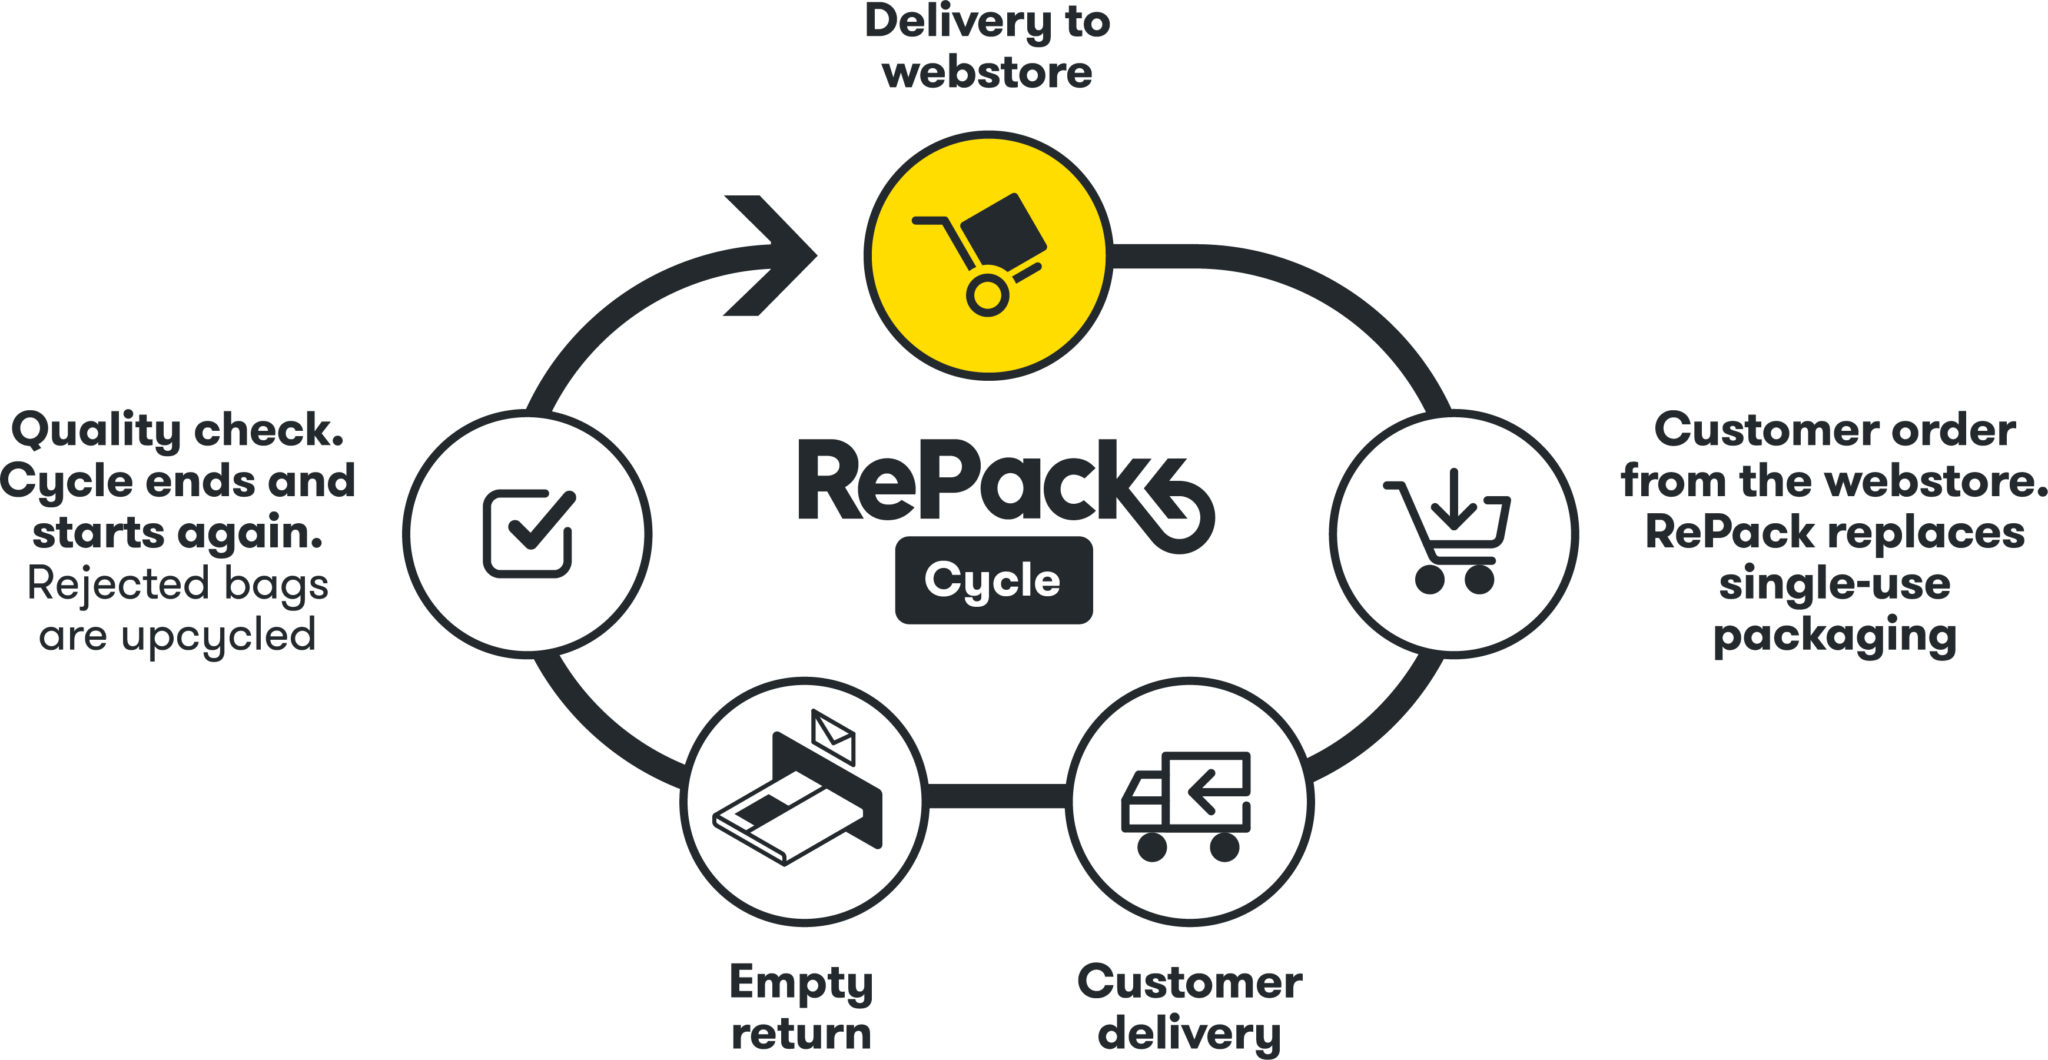 RePack cycle ZAL W ramach zero-waste Zalando testuje dostarczanie zamówień w opakowaniach wielokrotnego użytku